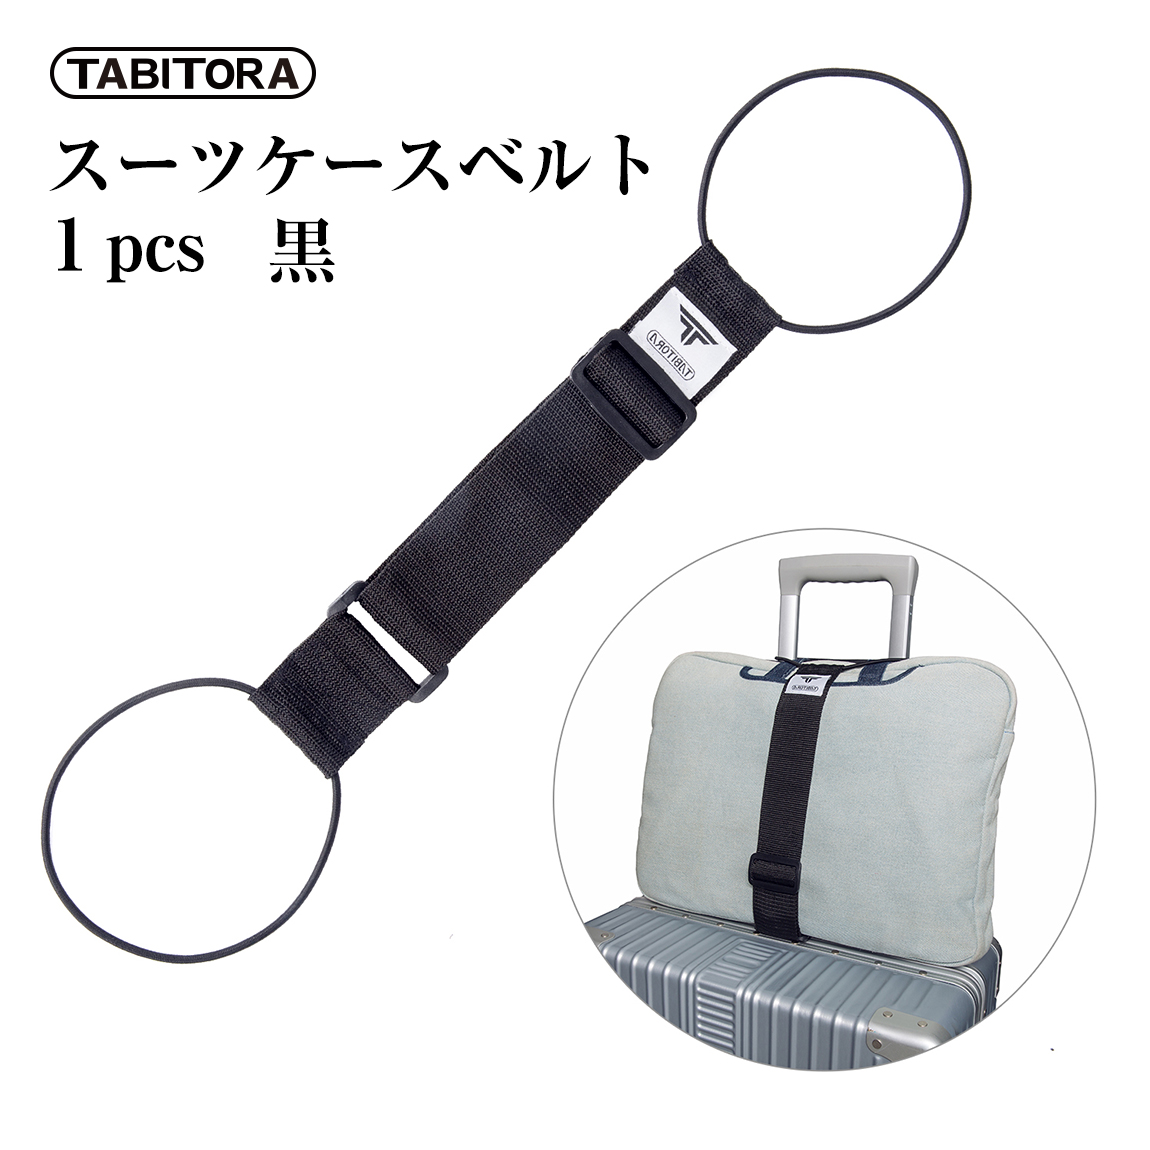 送料無料 人気の製品 TABITORA タビトラ バッグとめるベルト 旅行用品 スーツケースベルト ふるさと割 57~75cm ×幅5cm ブラック 調節可 BXD01-1PCS